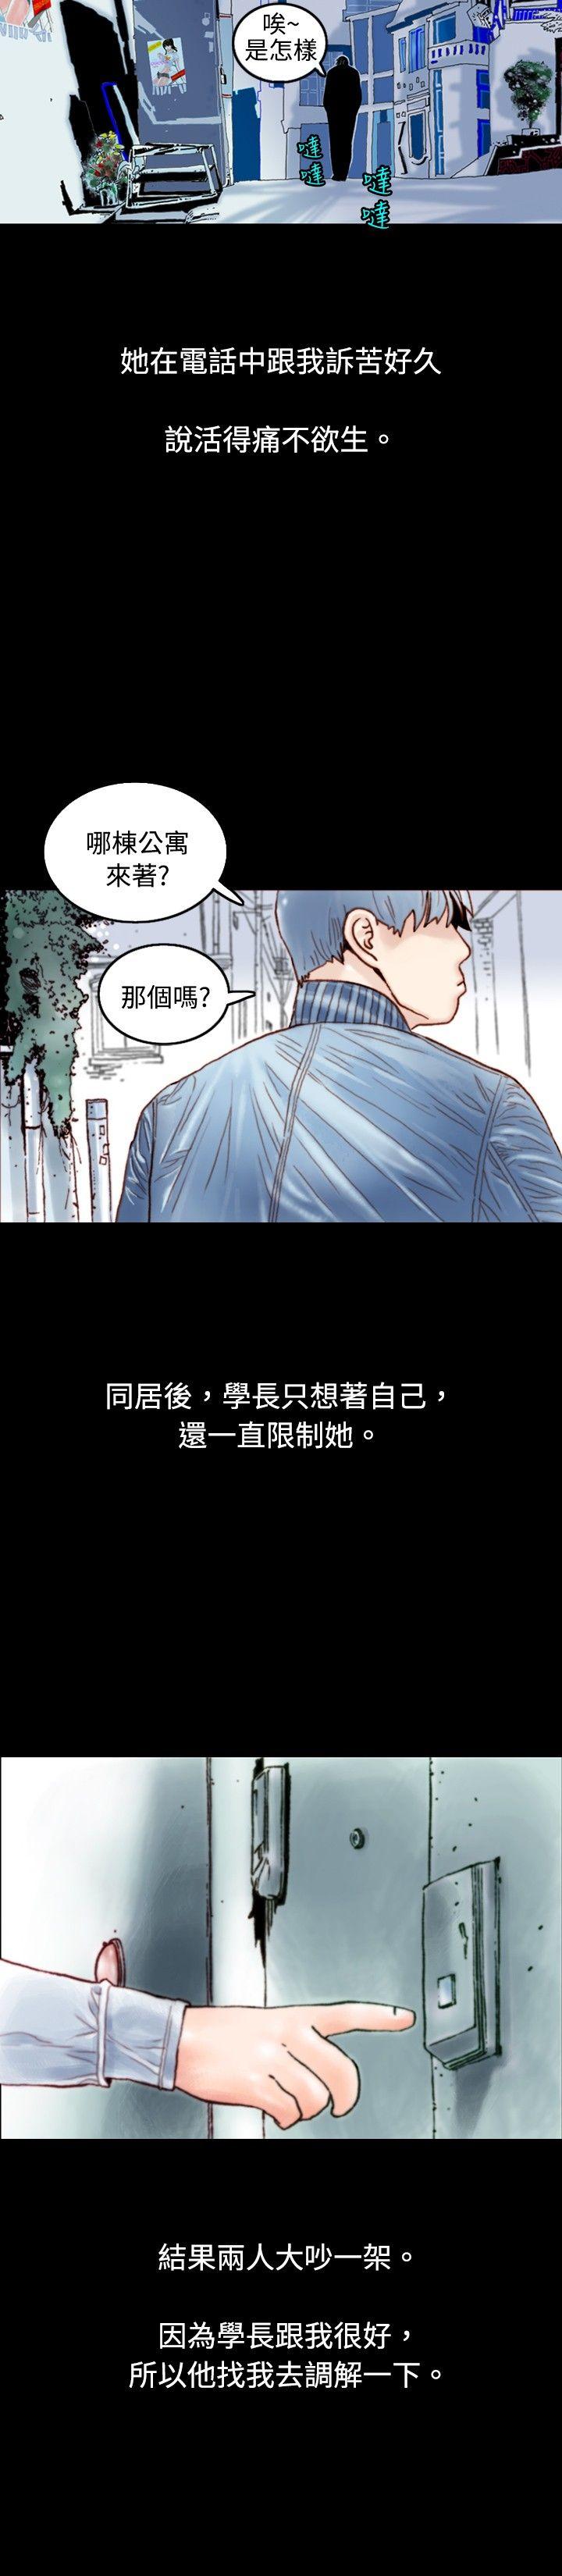 韩国污漫画 秘密Story 危险关係(上) 11